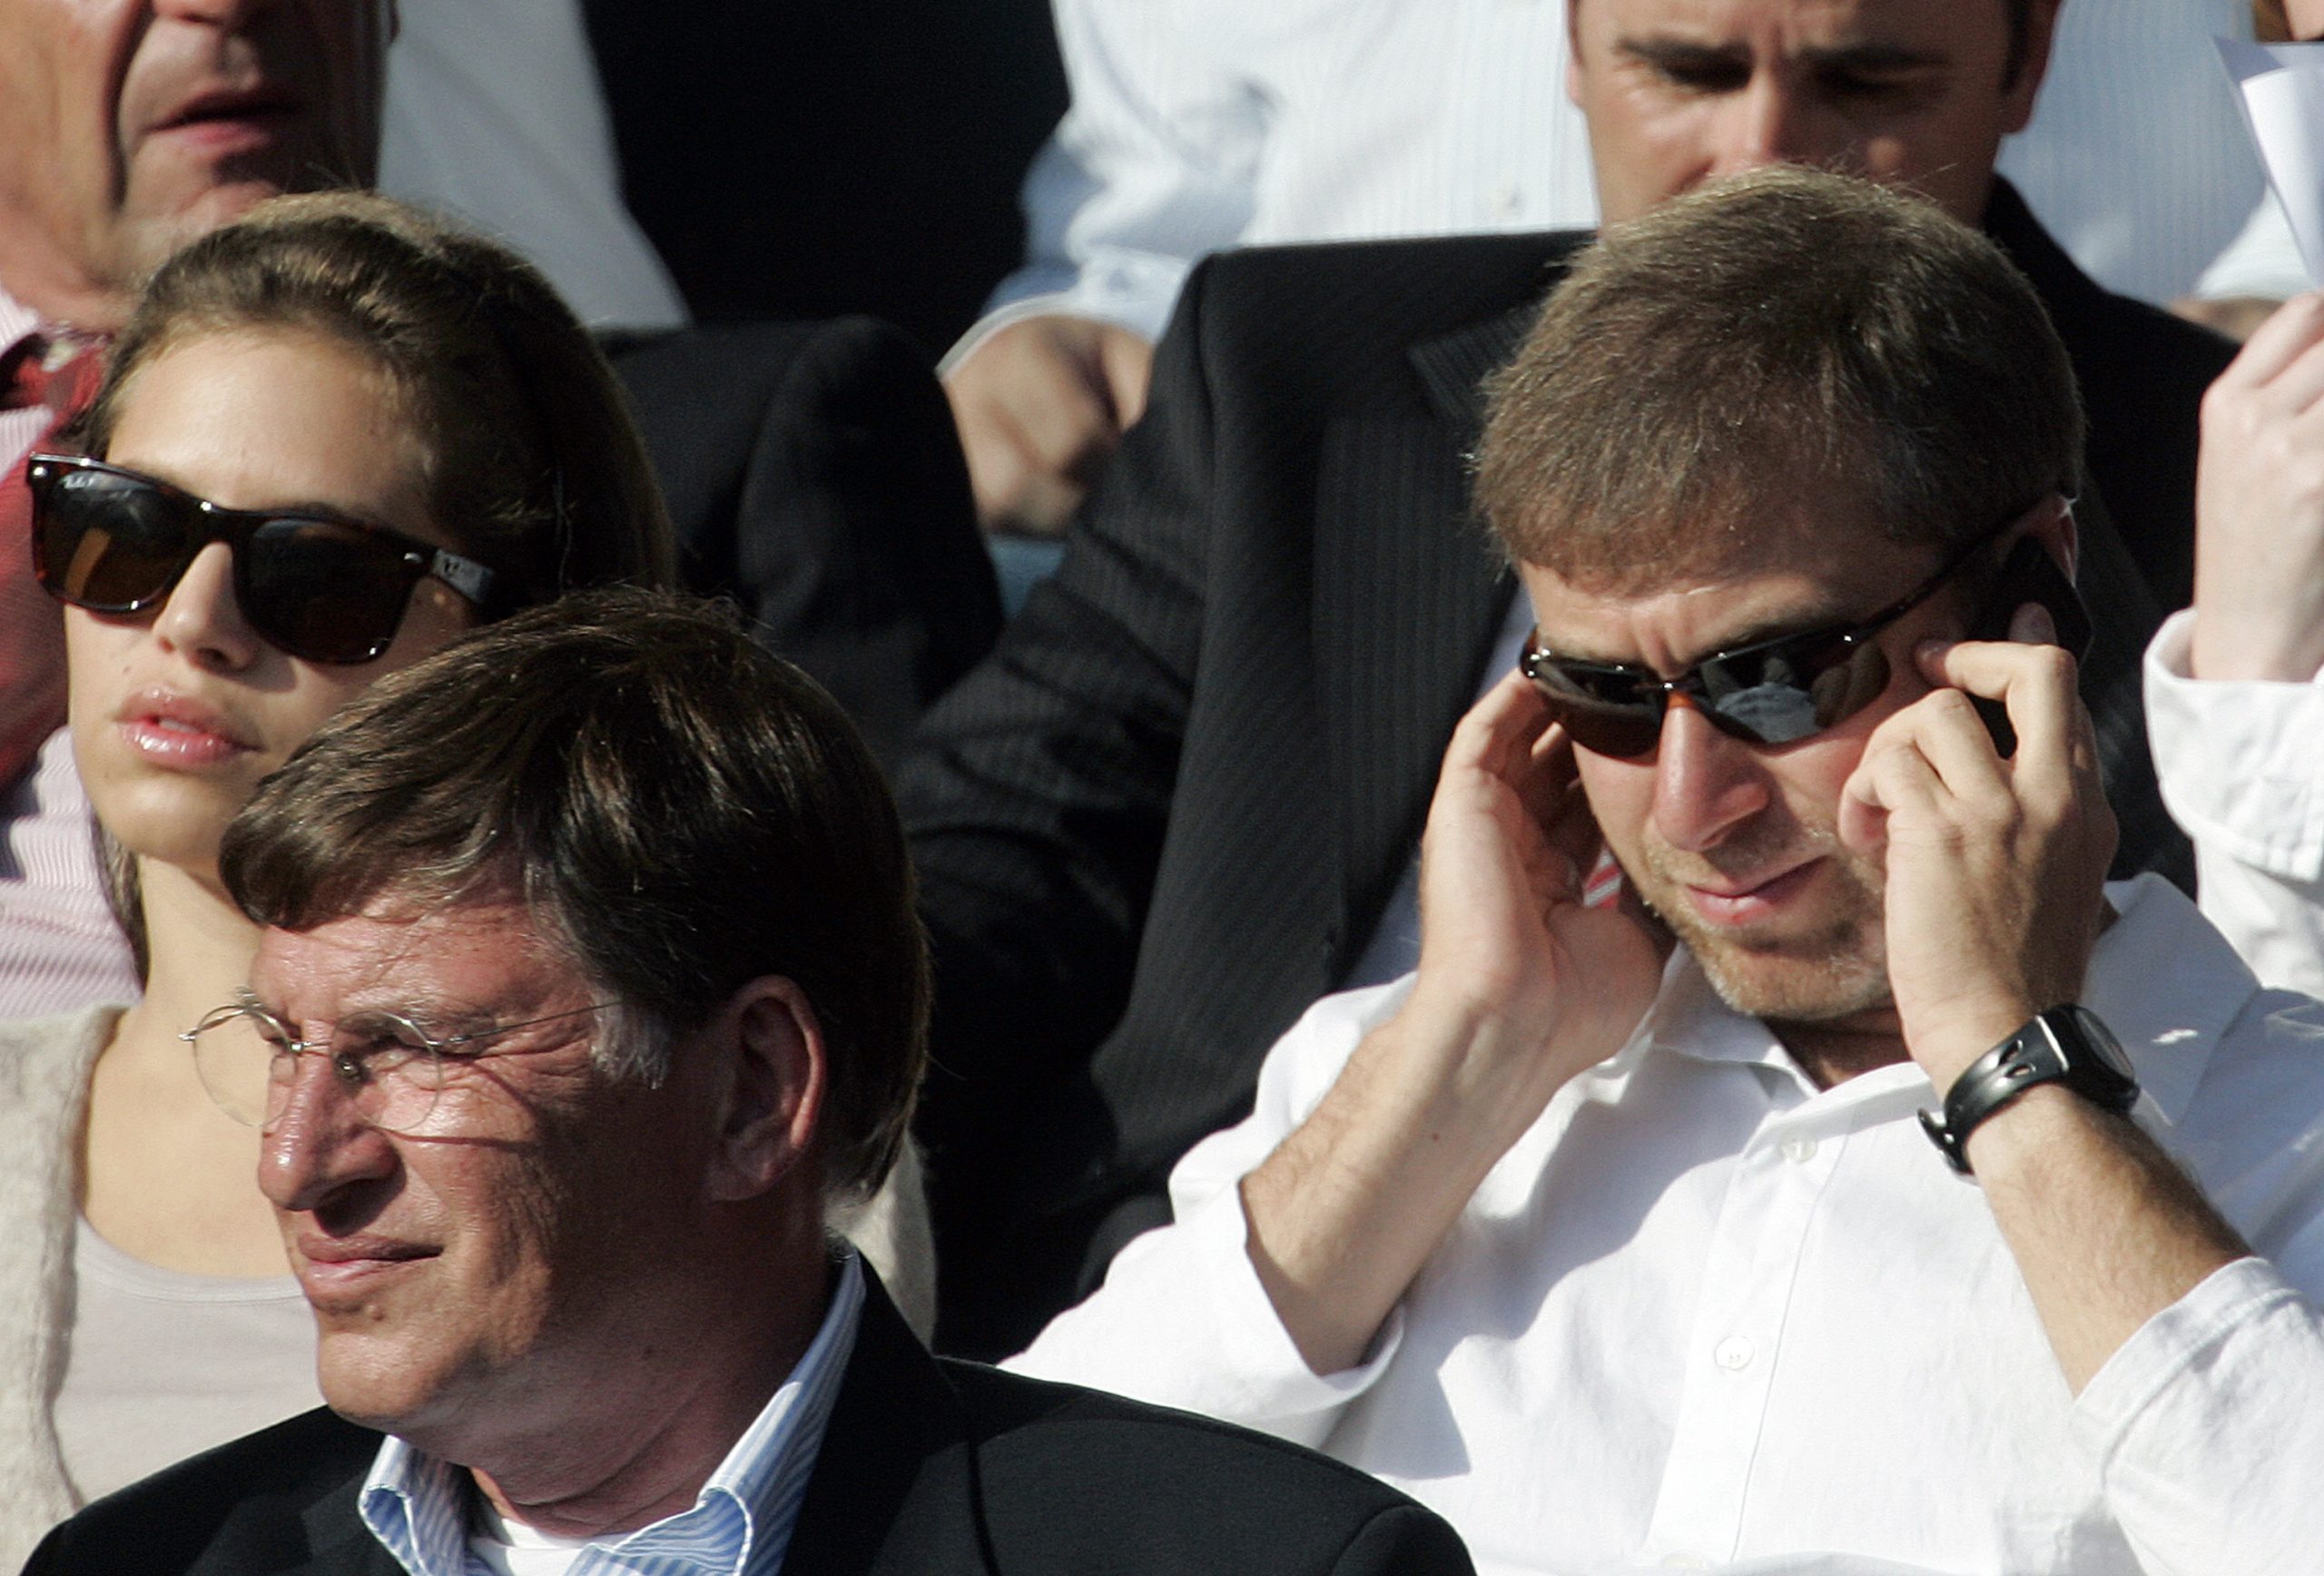 Foto: EPA. Abramovitsj  (rechts) samen met zijn destijds 25-jarige vriendin Daria Zhukova (links) bij Chelsea in 2007.